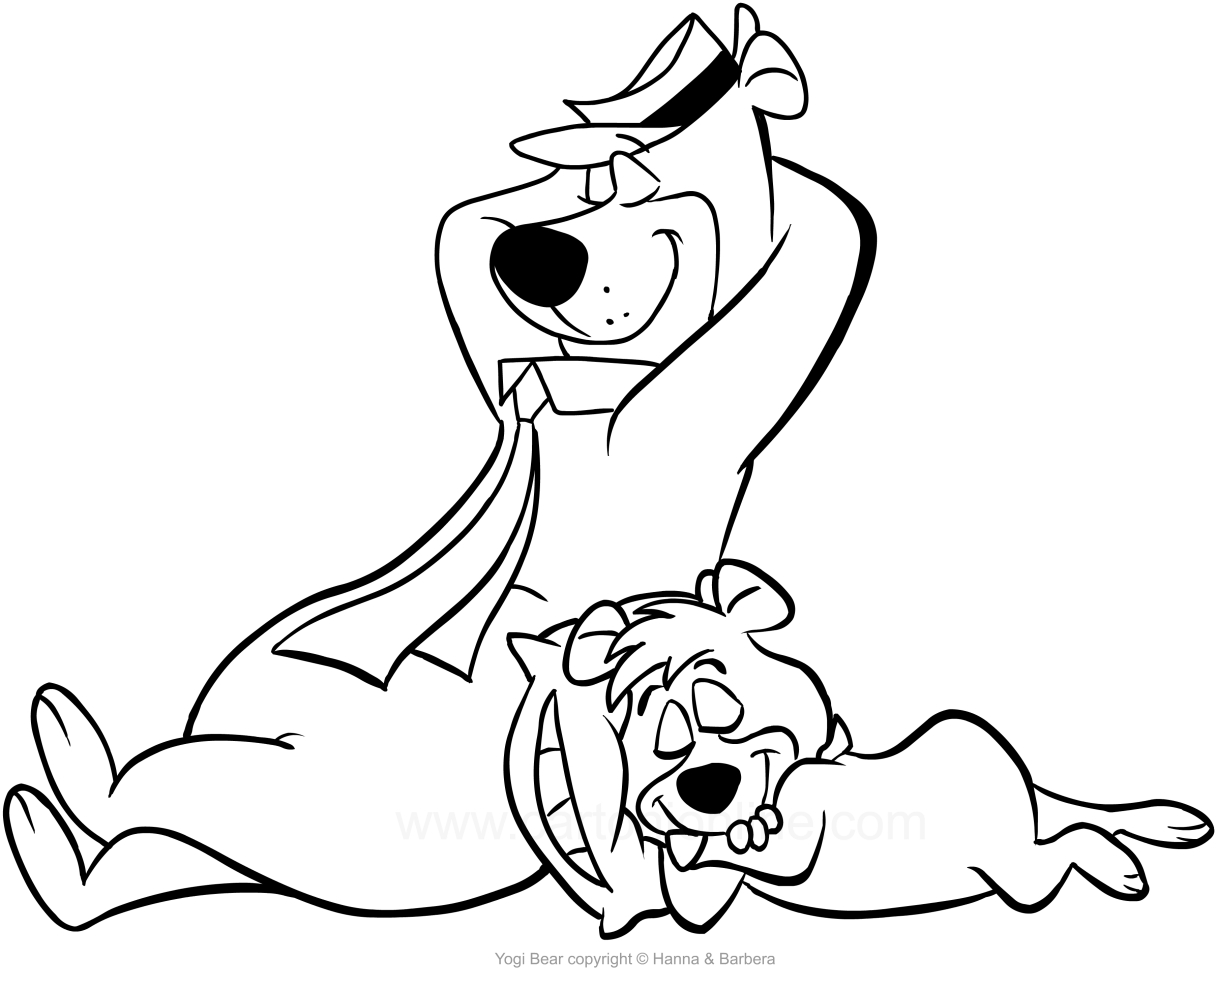 Yogi Bear und Boo Boo Schlafseite zum Ausdrucken und Ausmalen